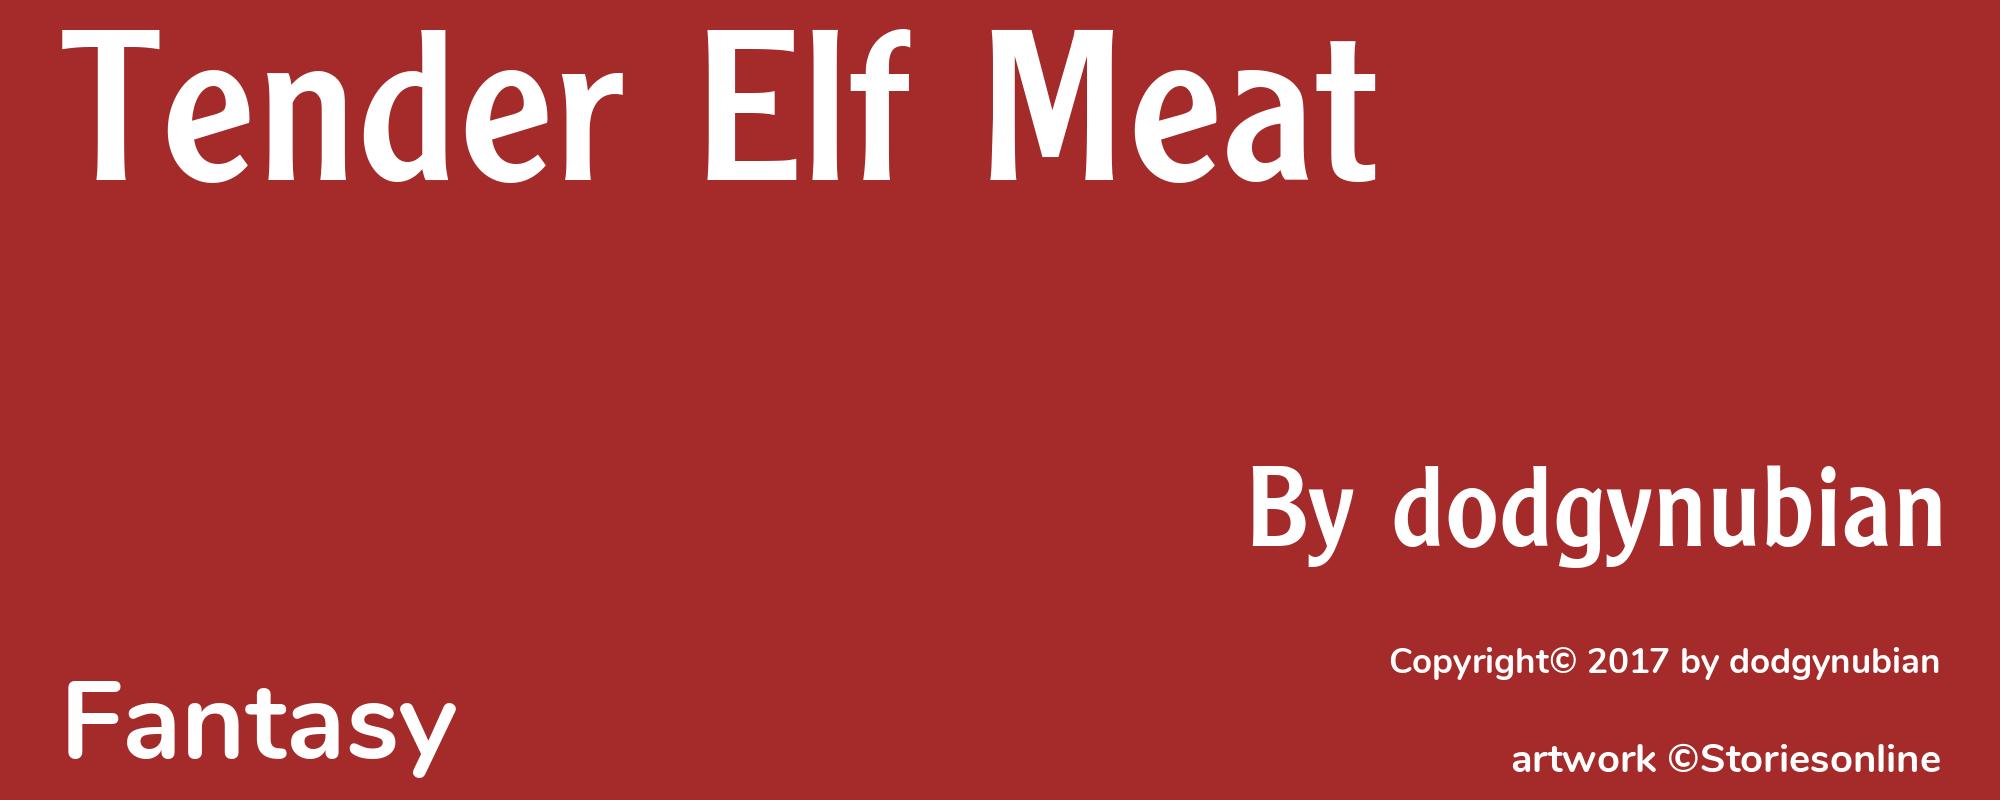 Tender Elf Meat - Cover